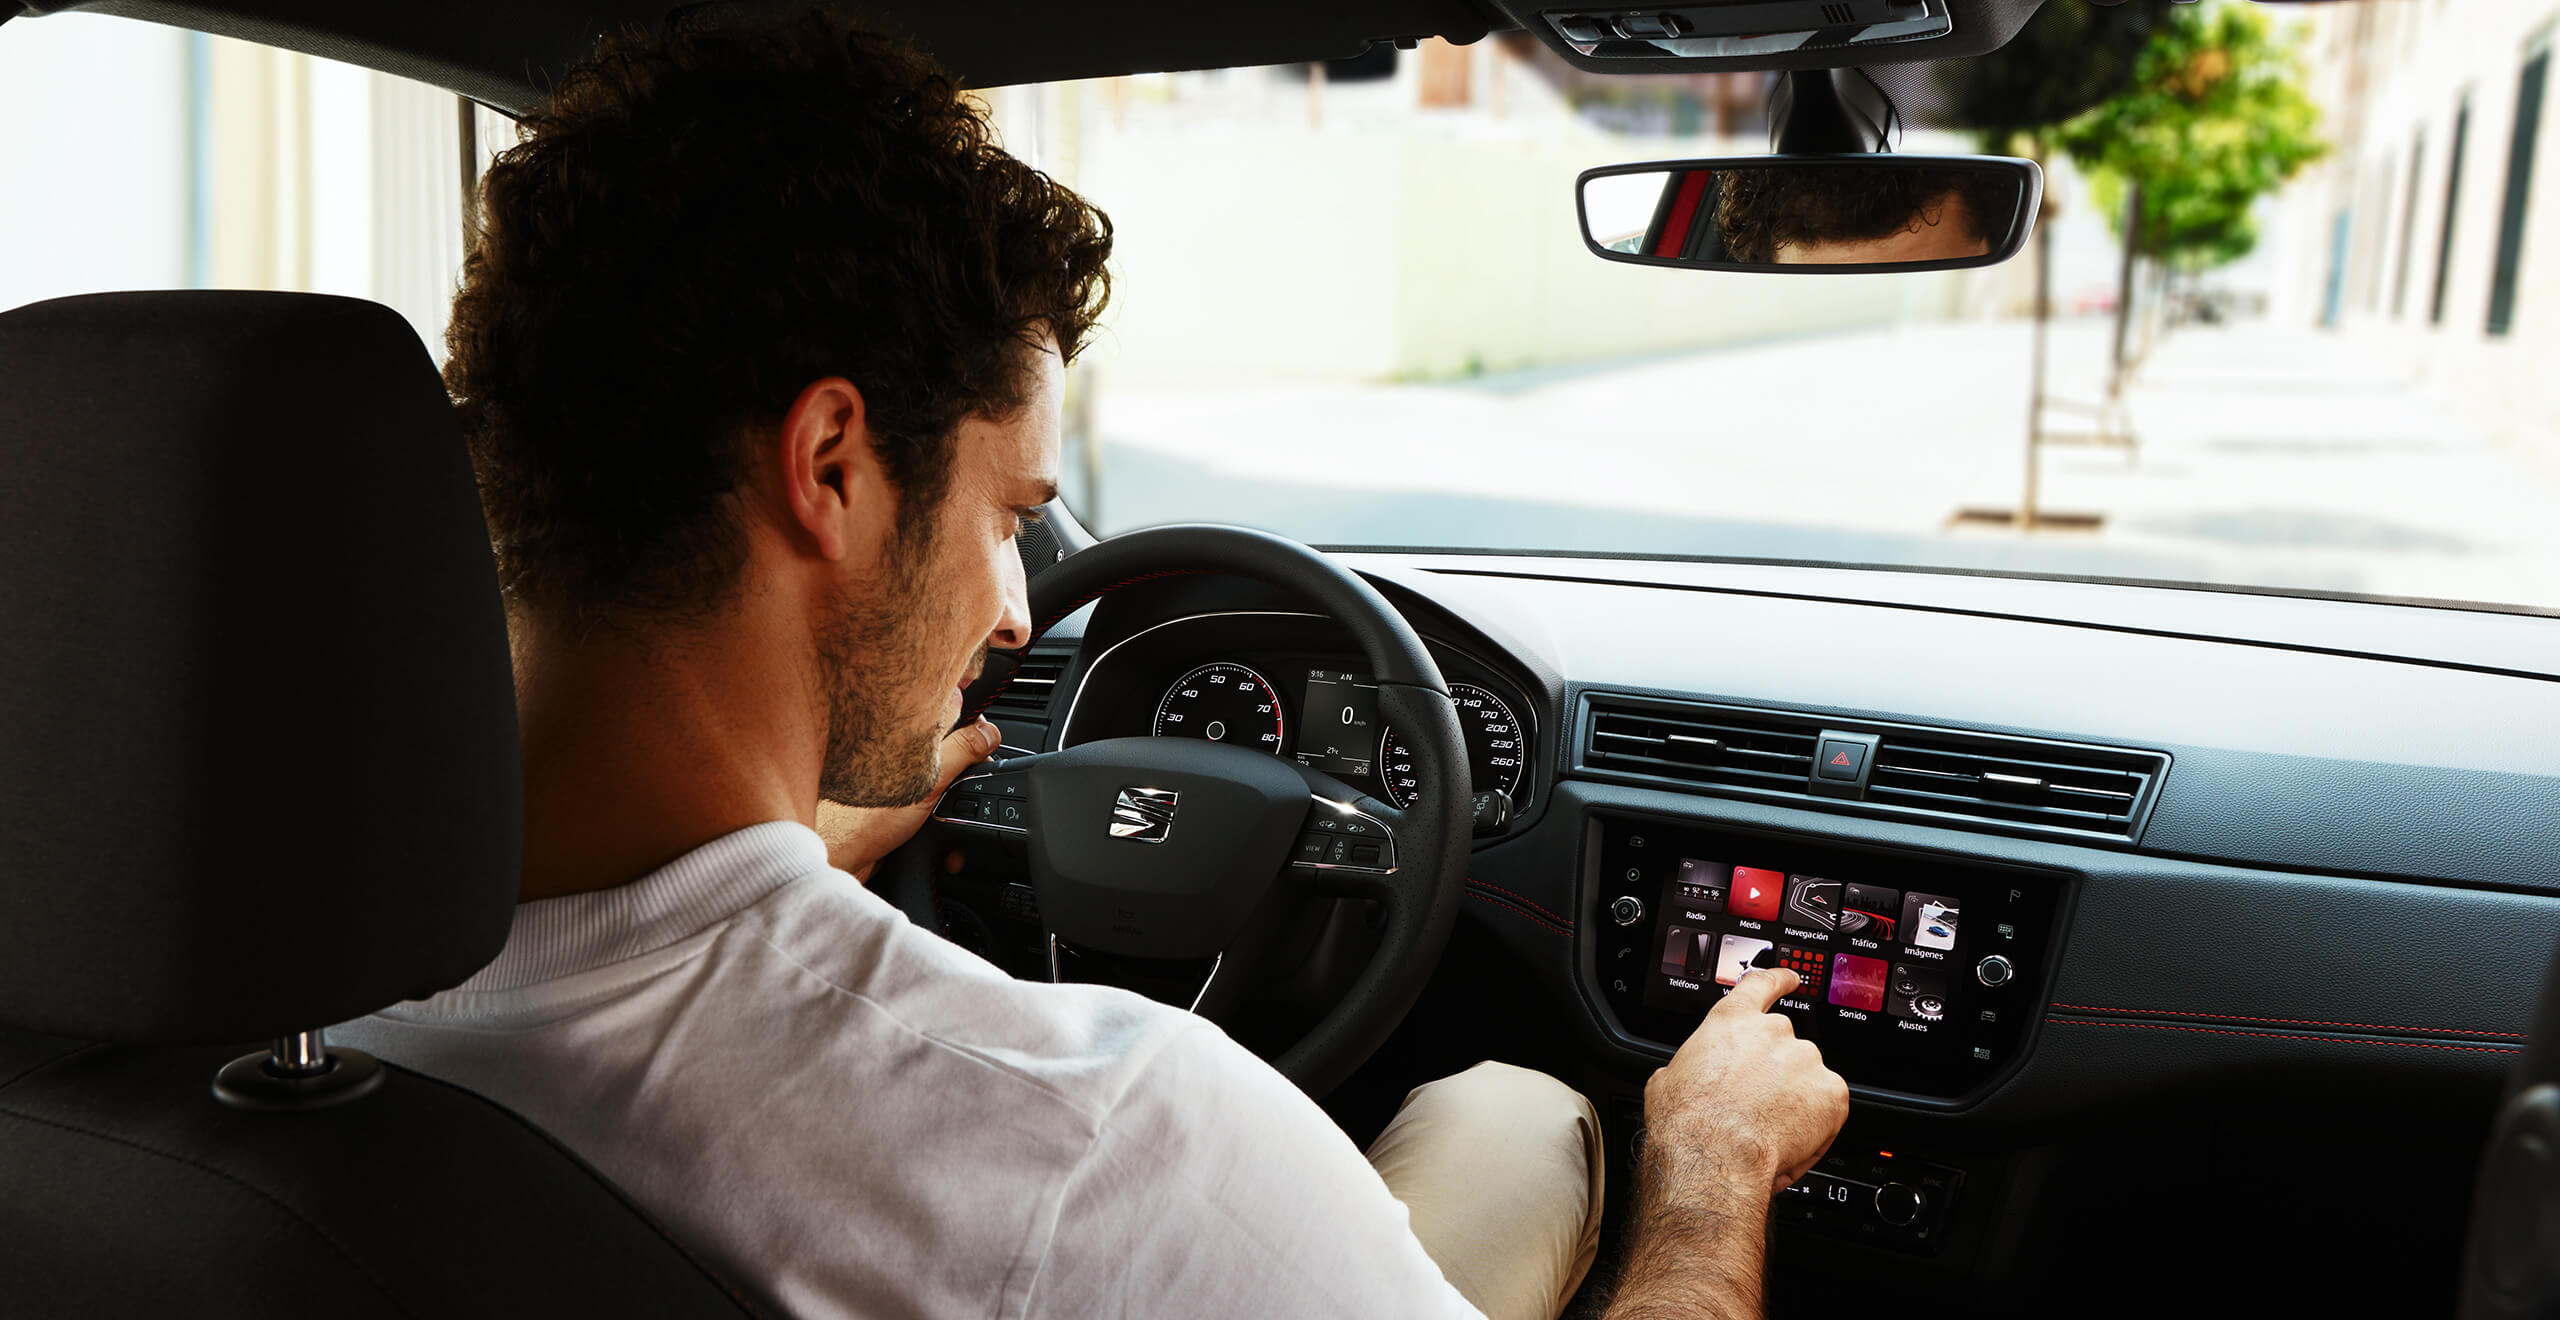 SEAT service och underhåll för nya bilar – interiörvy bakifrån på en manlig förare som trycker på en knapp på instrumentpanelen till en ny SEAT-bil